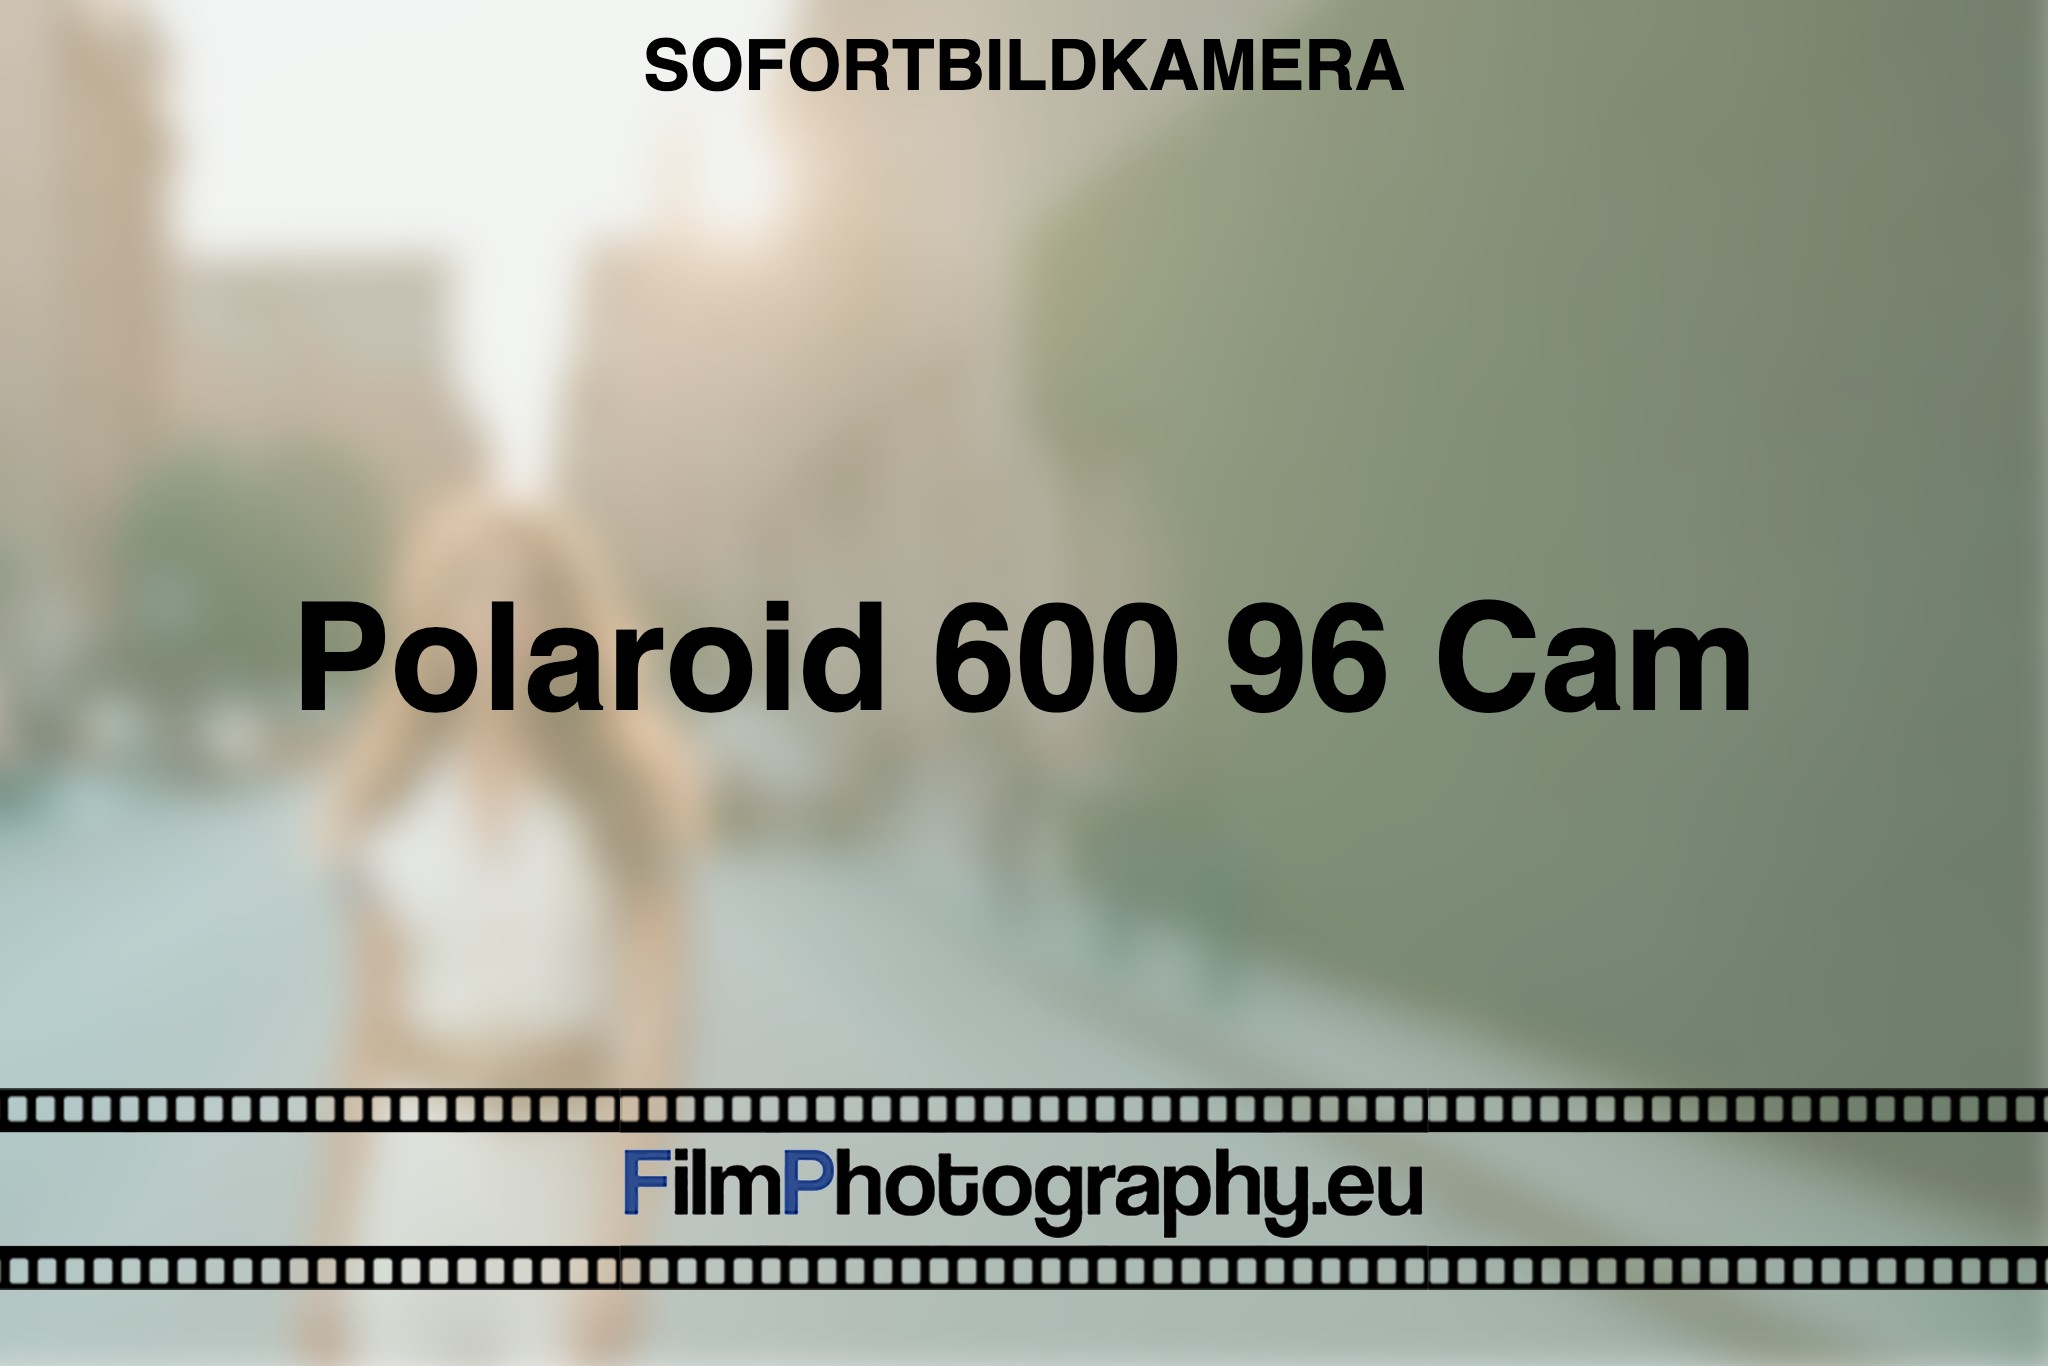 polaroid-600-96-cam-sofortbildkamera-bnv